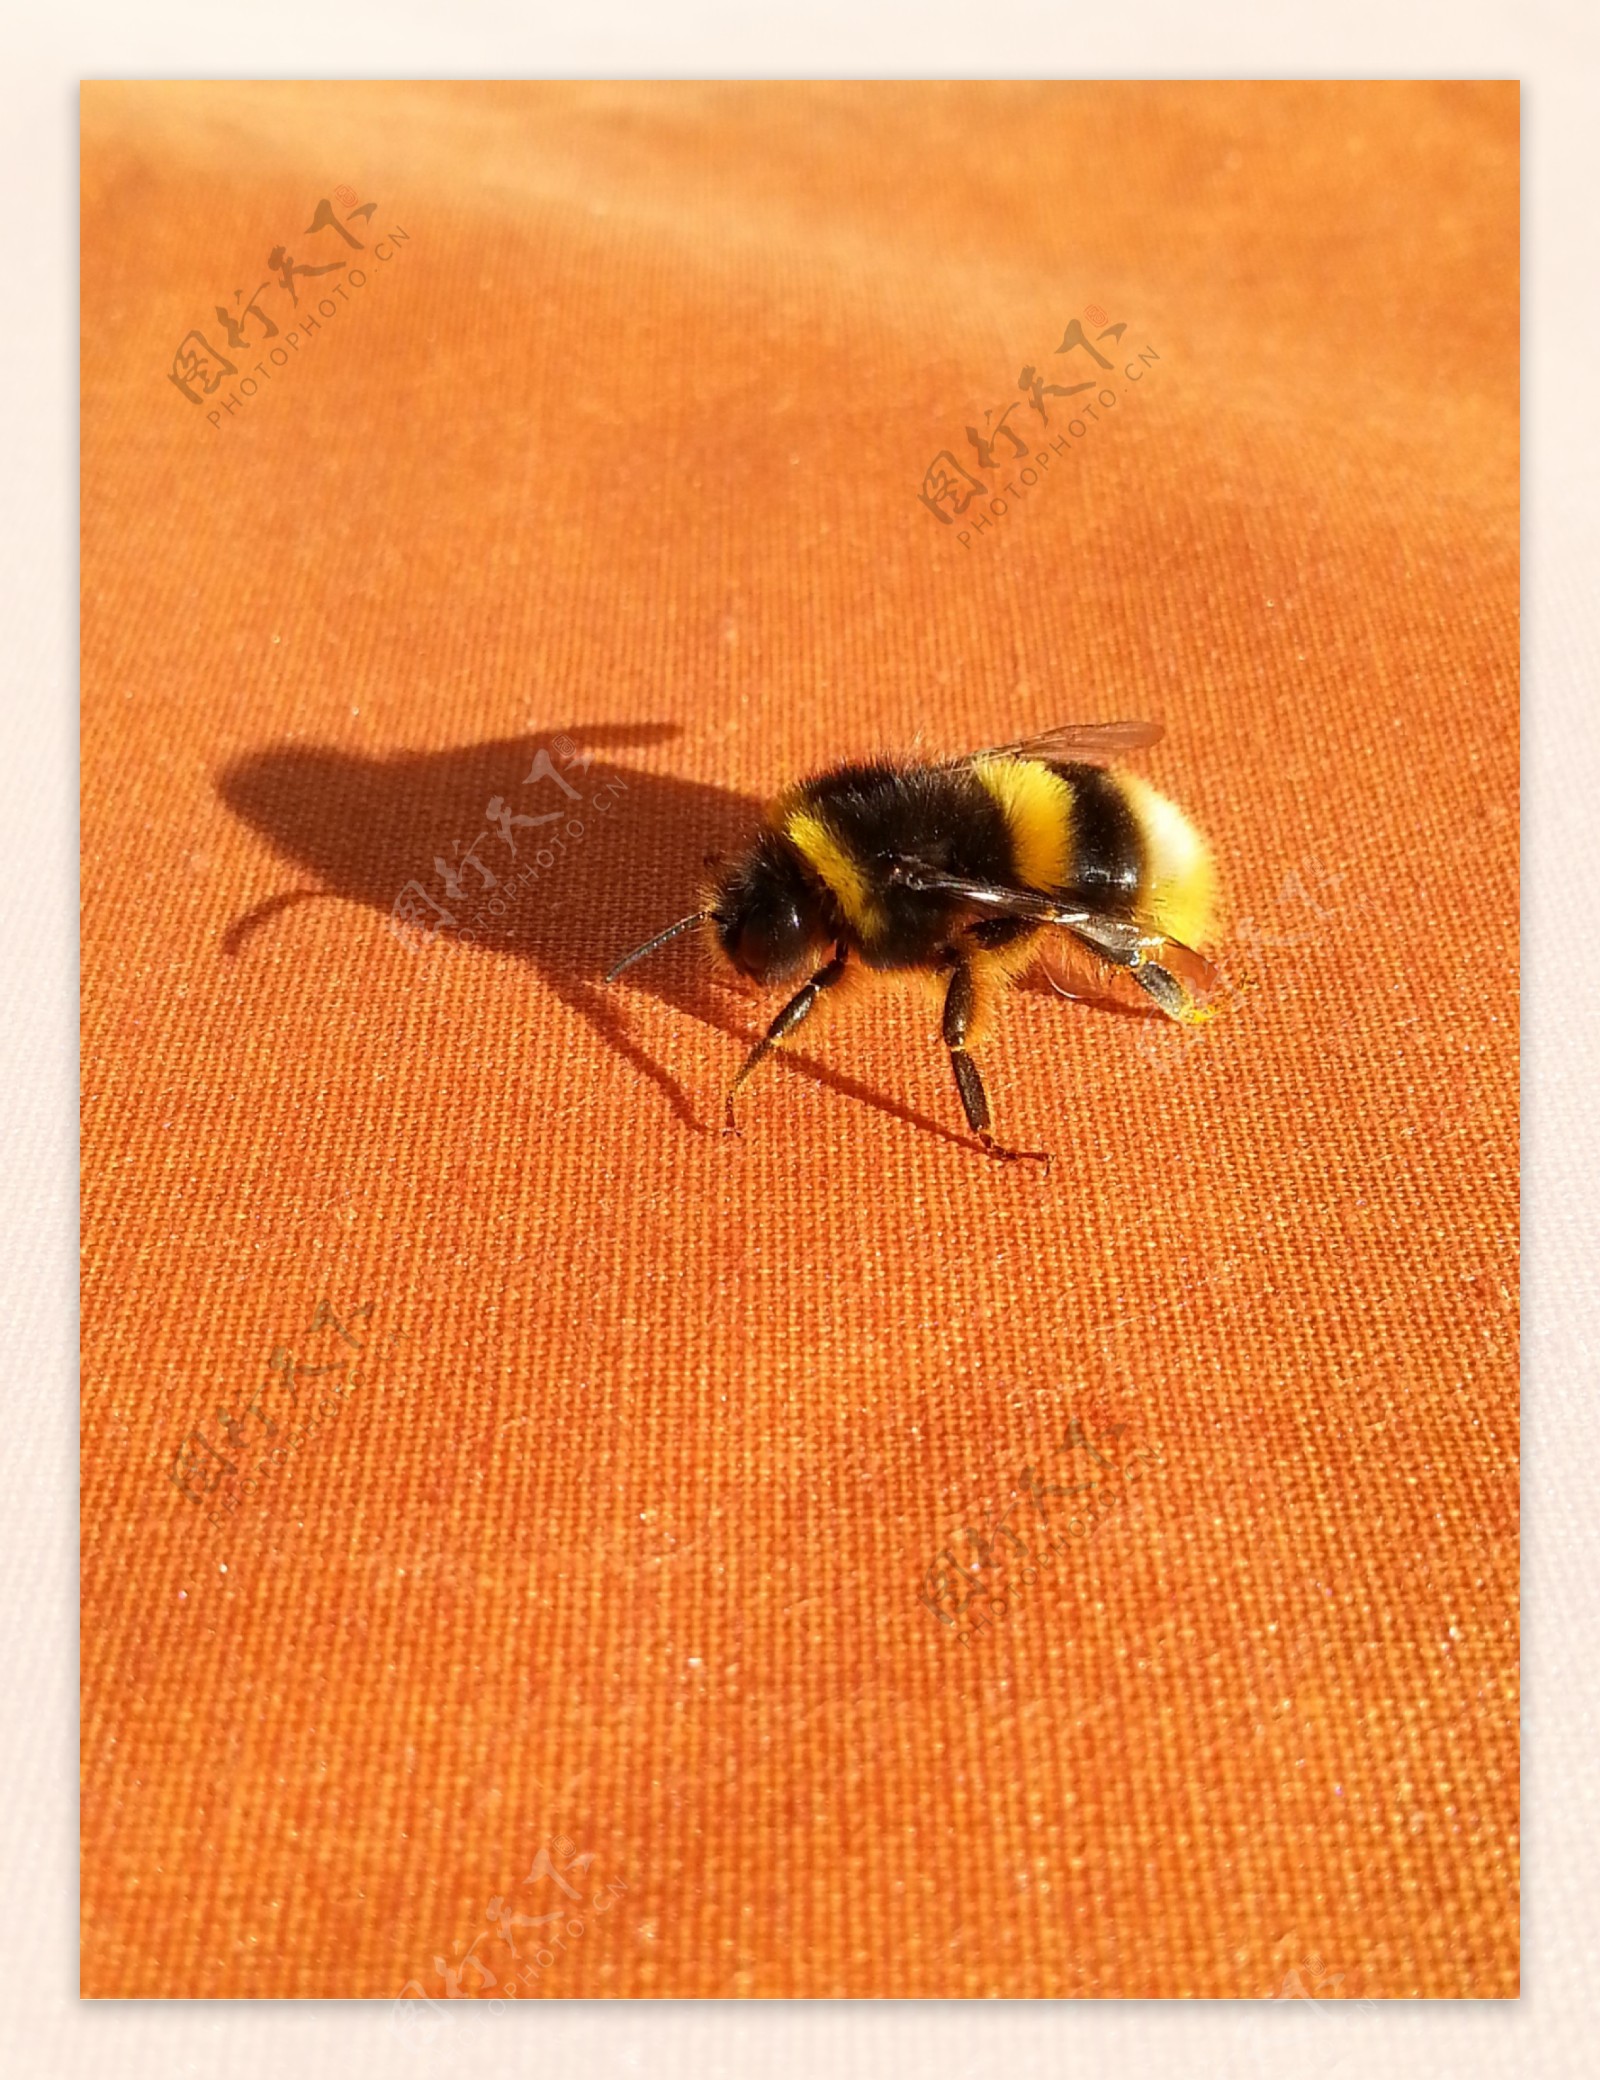 野生蜜蜂图片